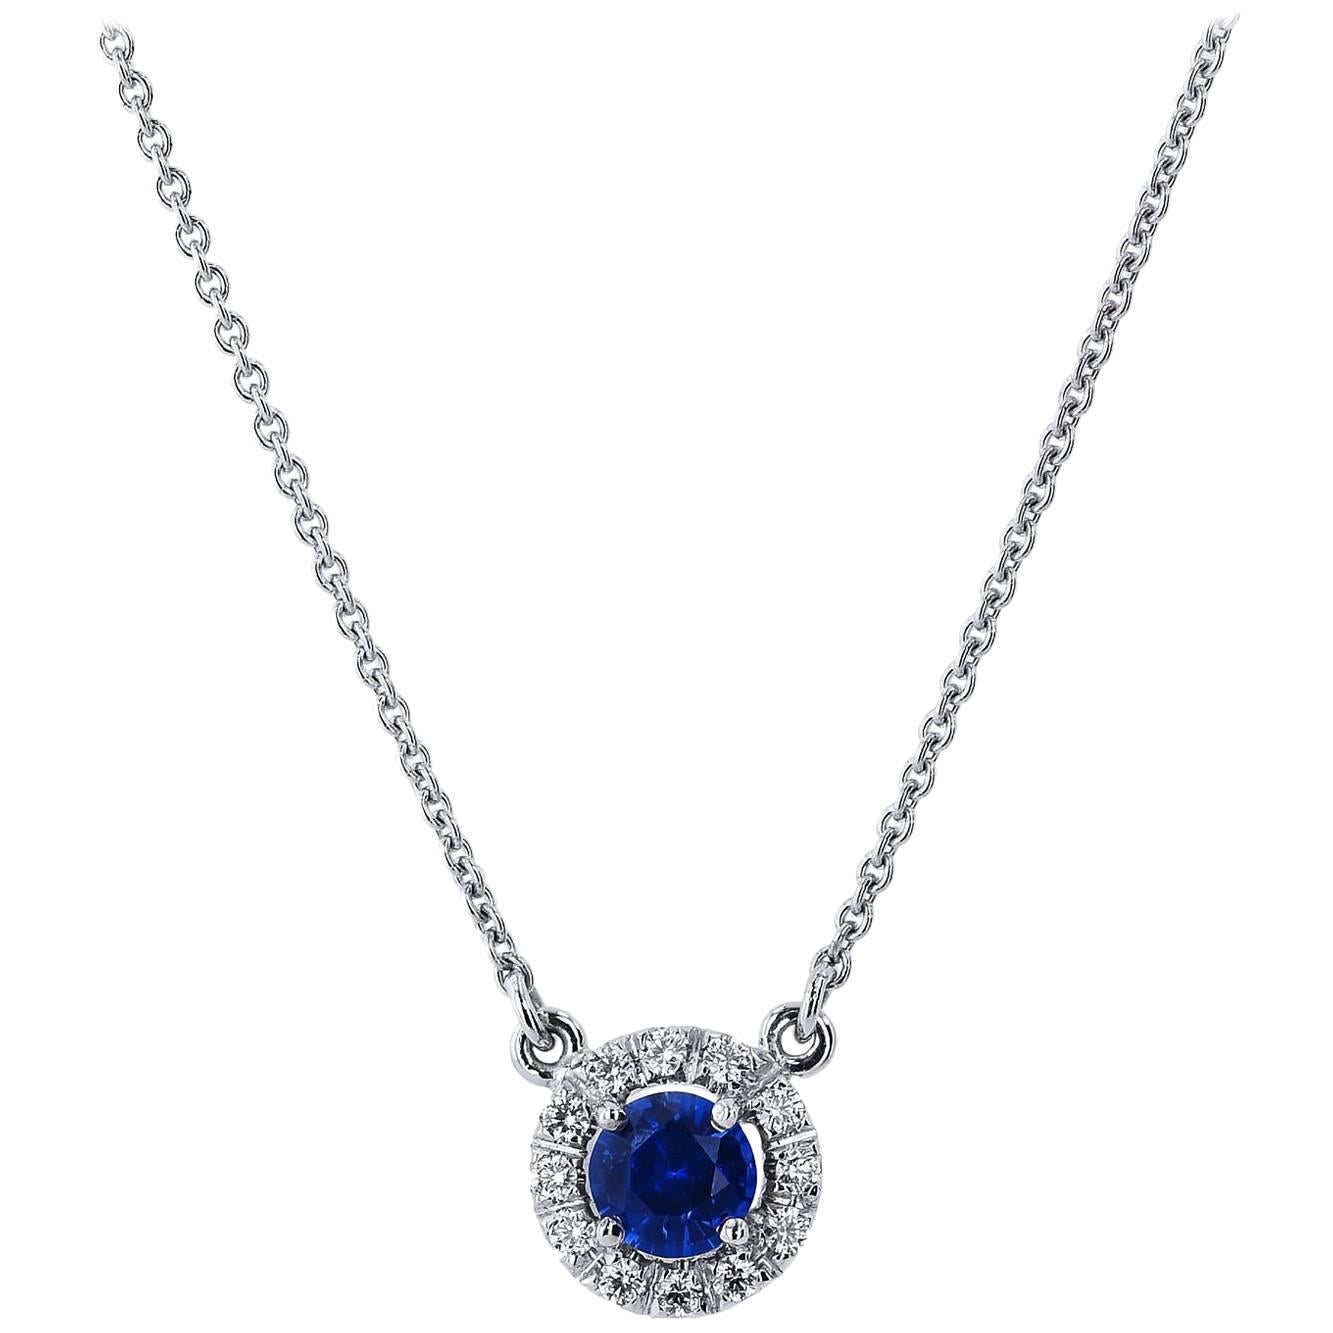 H & H 0.45 Carat Royal Blue Sapphire Pendant Necklace